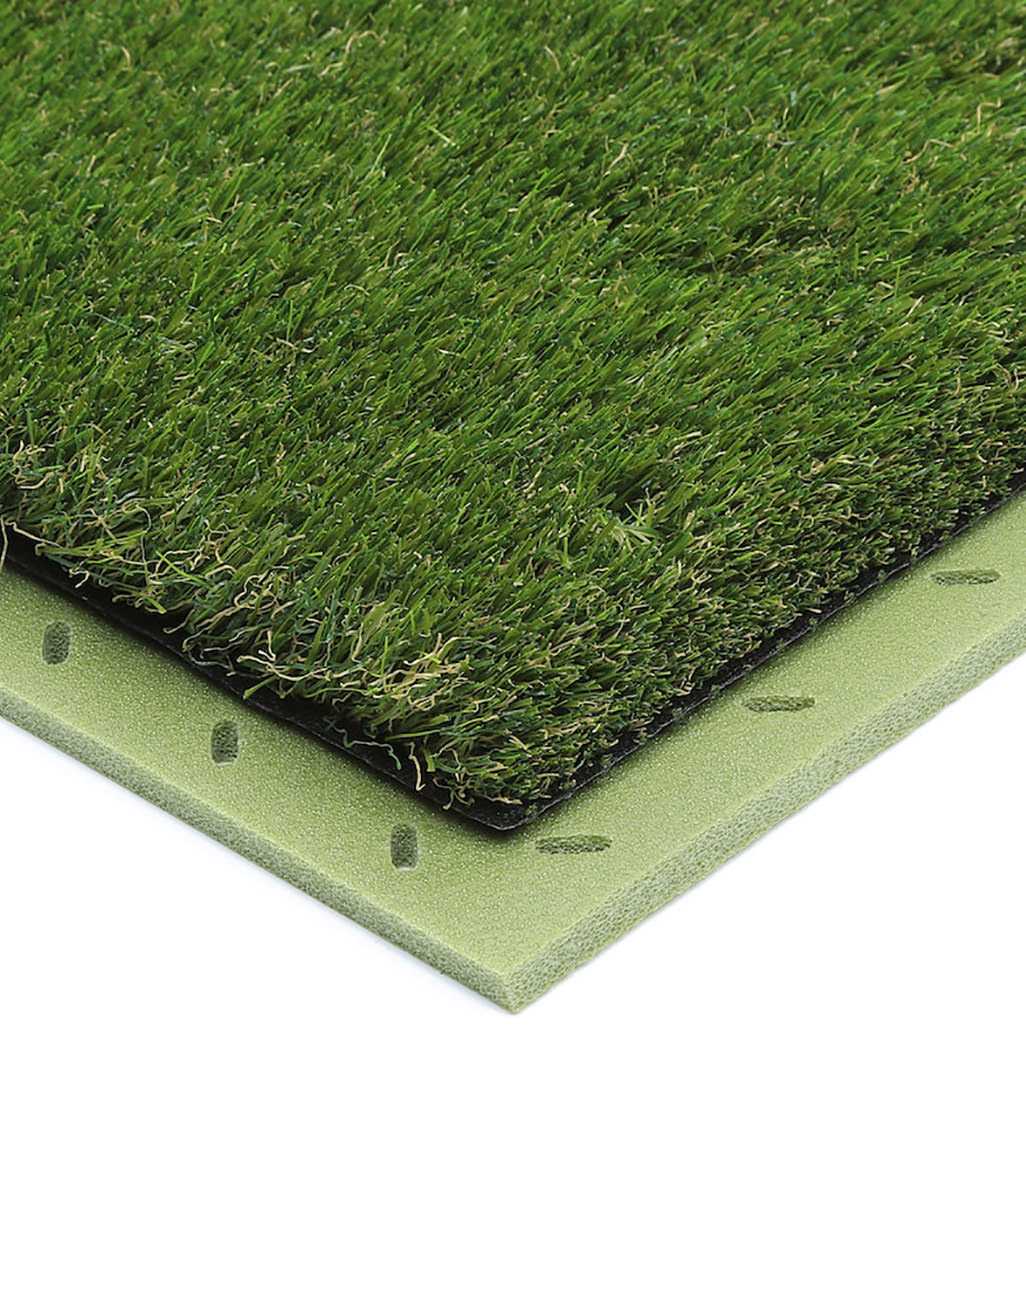 10 Benefits of Artificial Grass Underlay